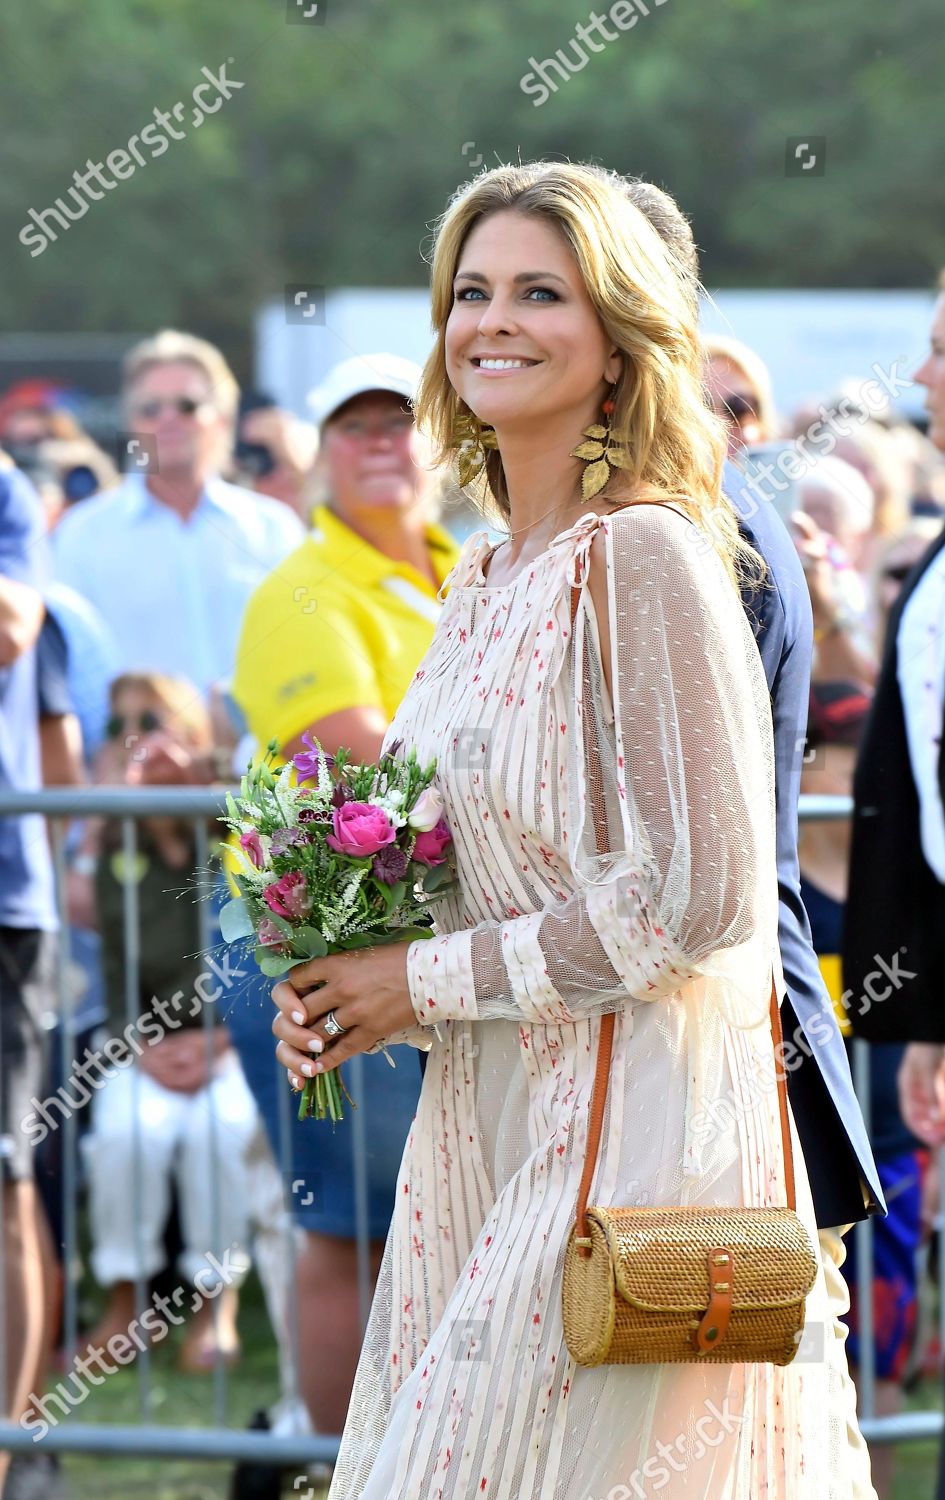 crown-princess-victorias-41st-birthday-solliden-oland-sweden-shutterstock-editorial-9761821y.jpg